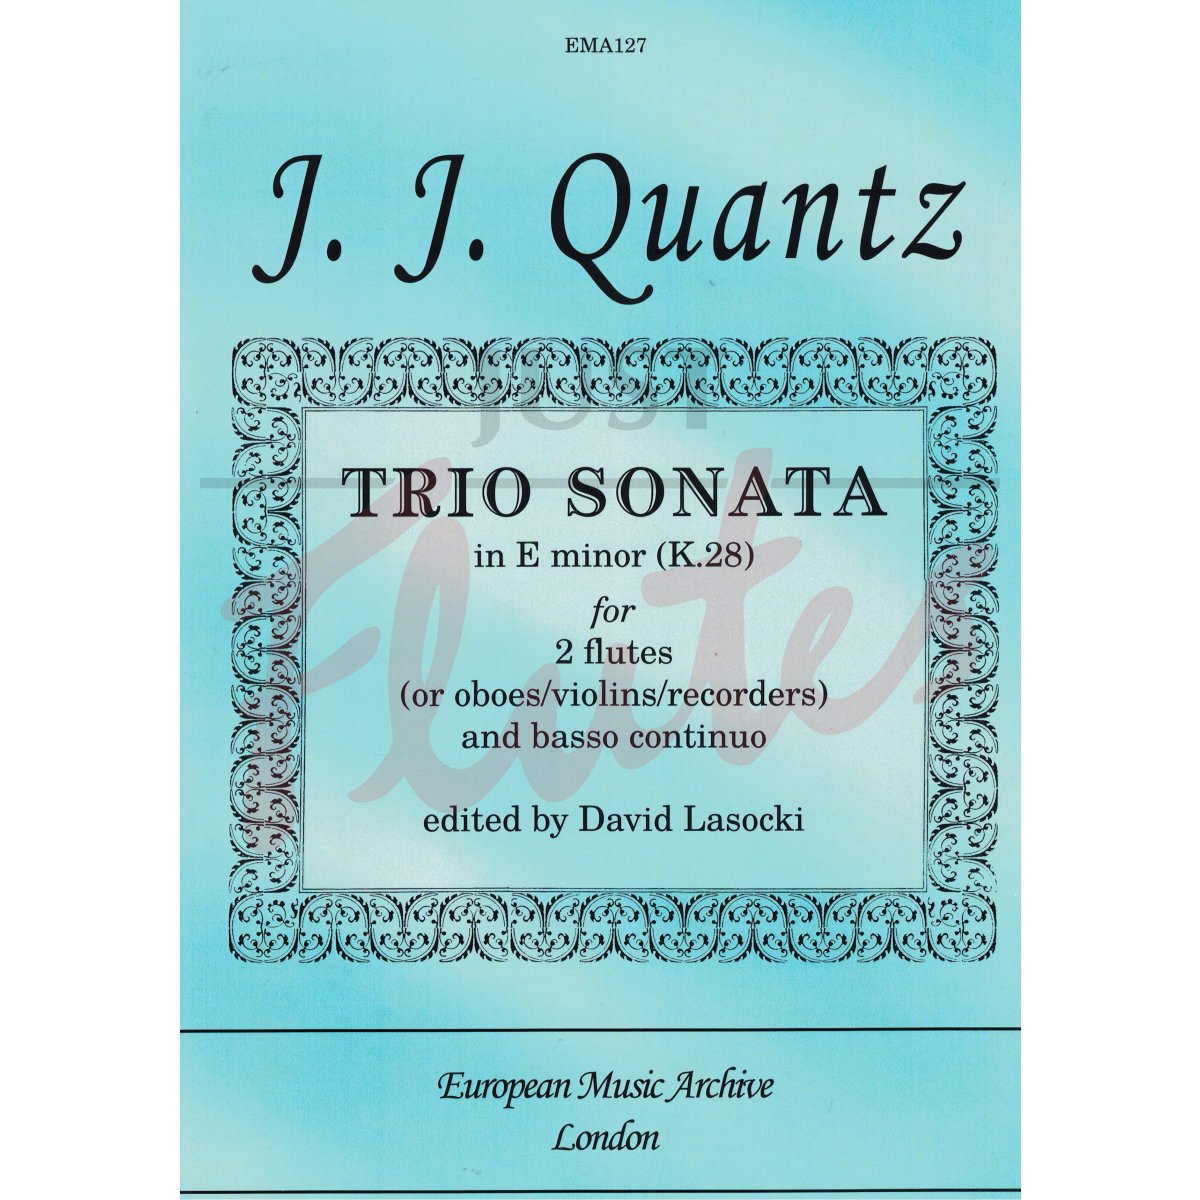 Trio Sonata in E minor